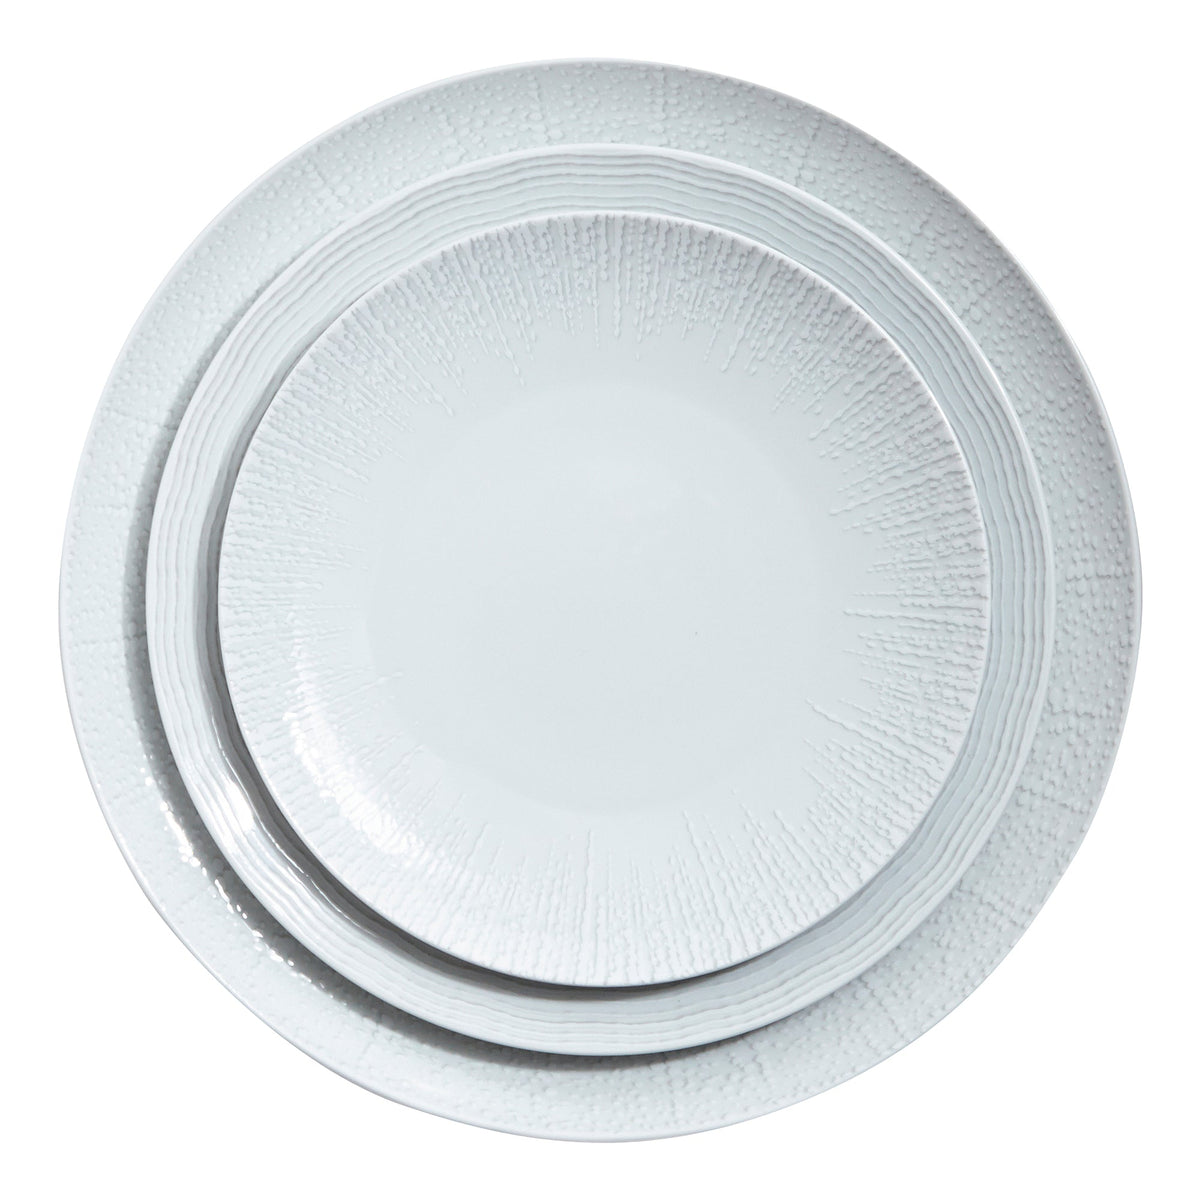 Mar Dinner Plate